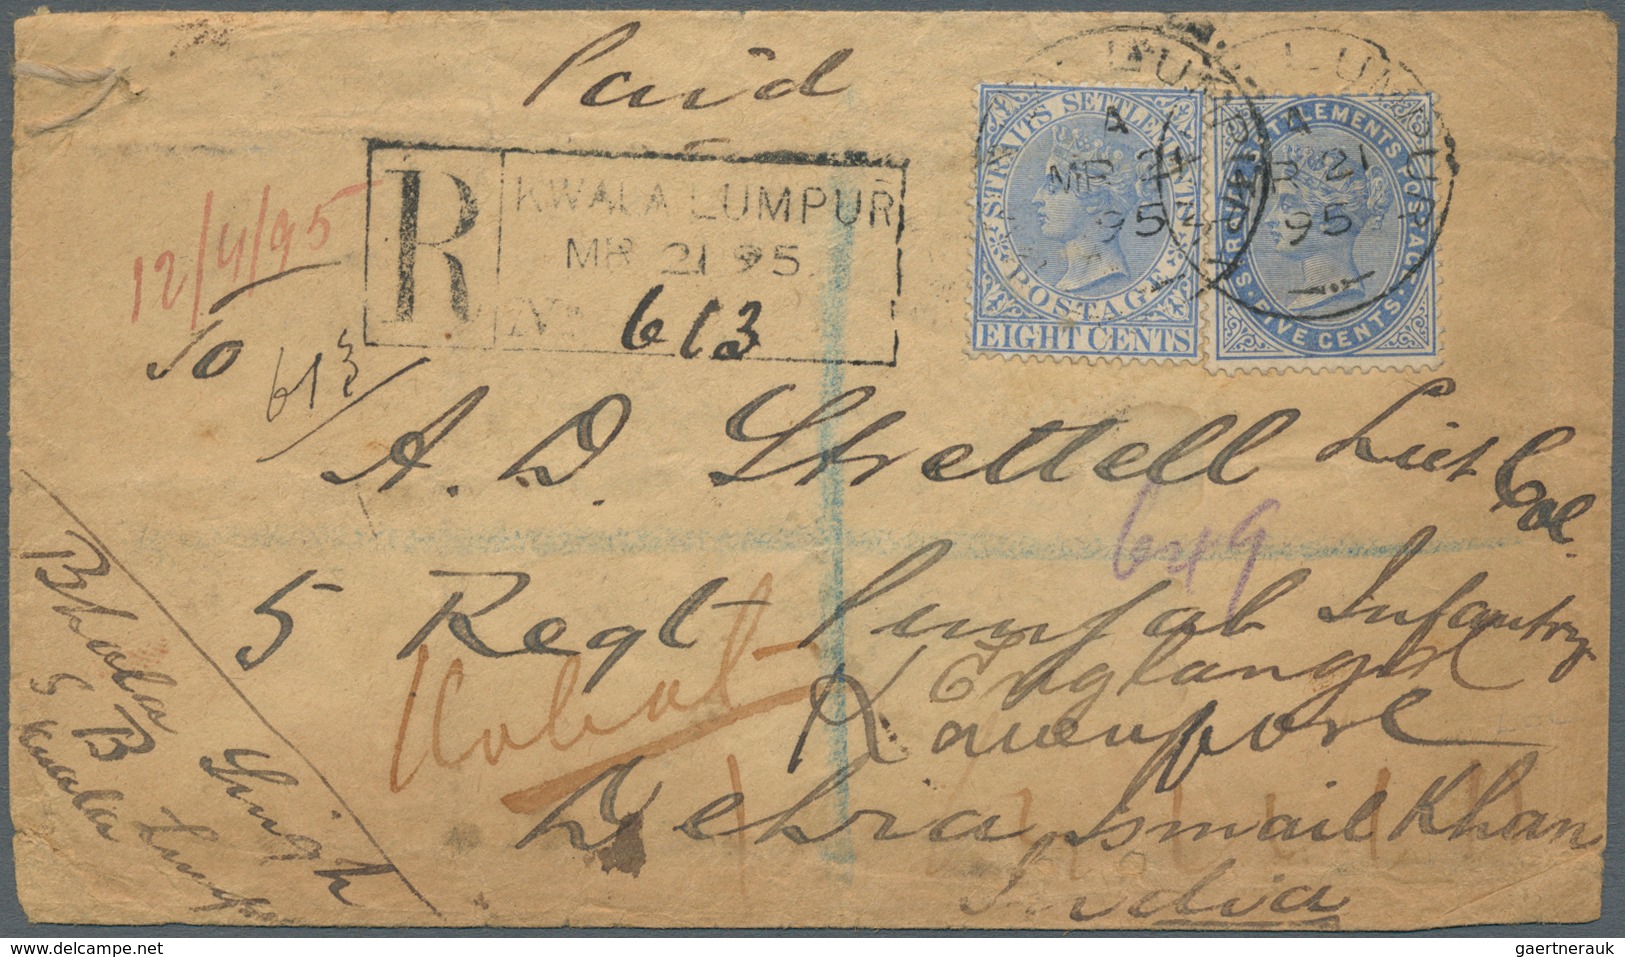 07049 Malaiische Staaten - Selangor: 1895 Registered Cover From Kuala Lumpur, Selangor To A British Lieut. - Selangor